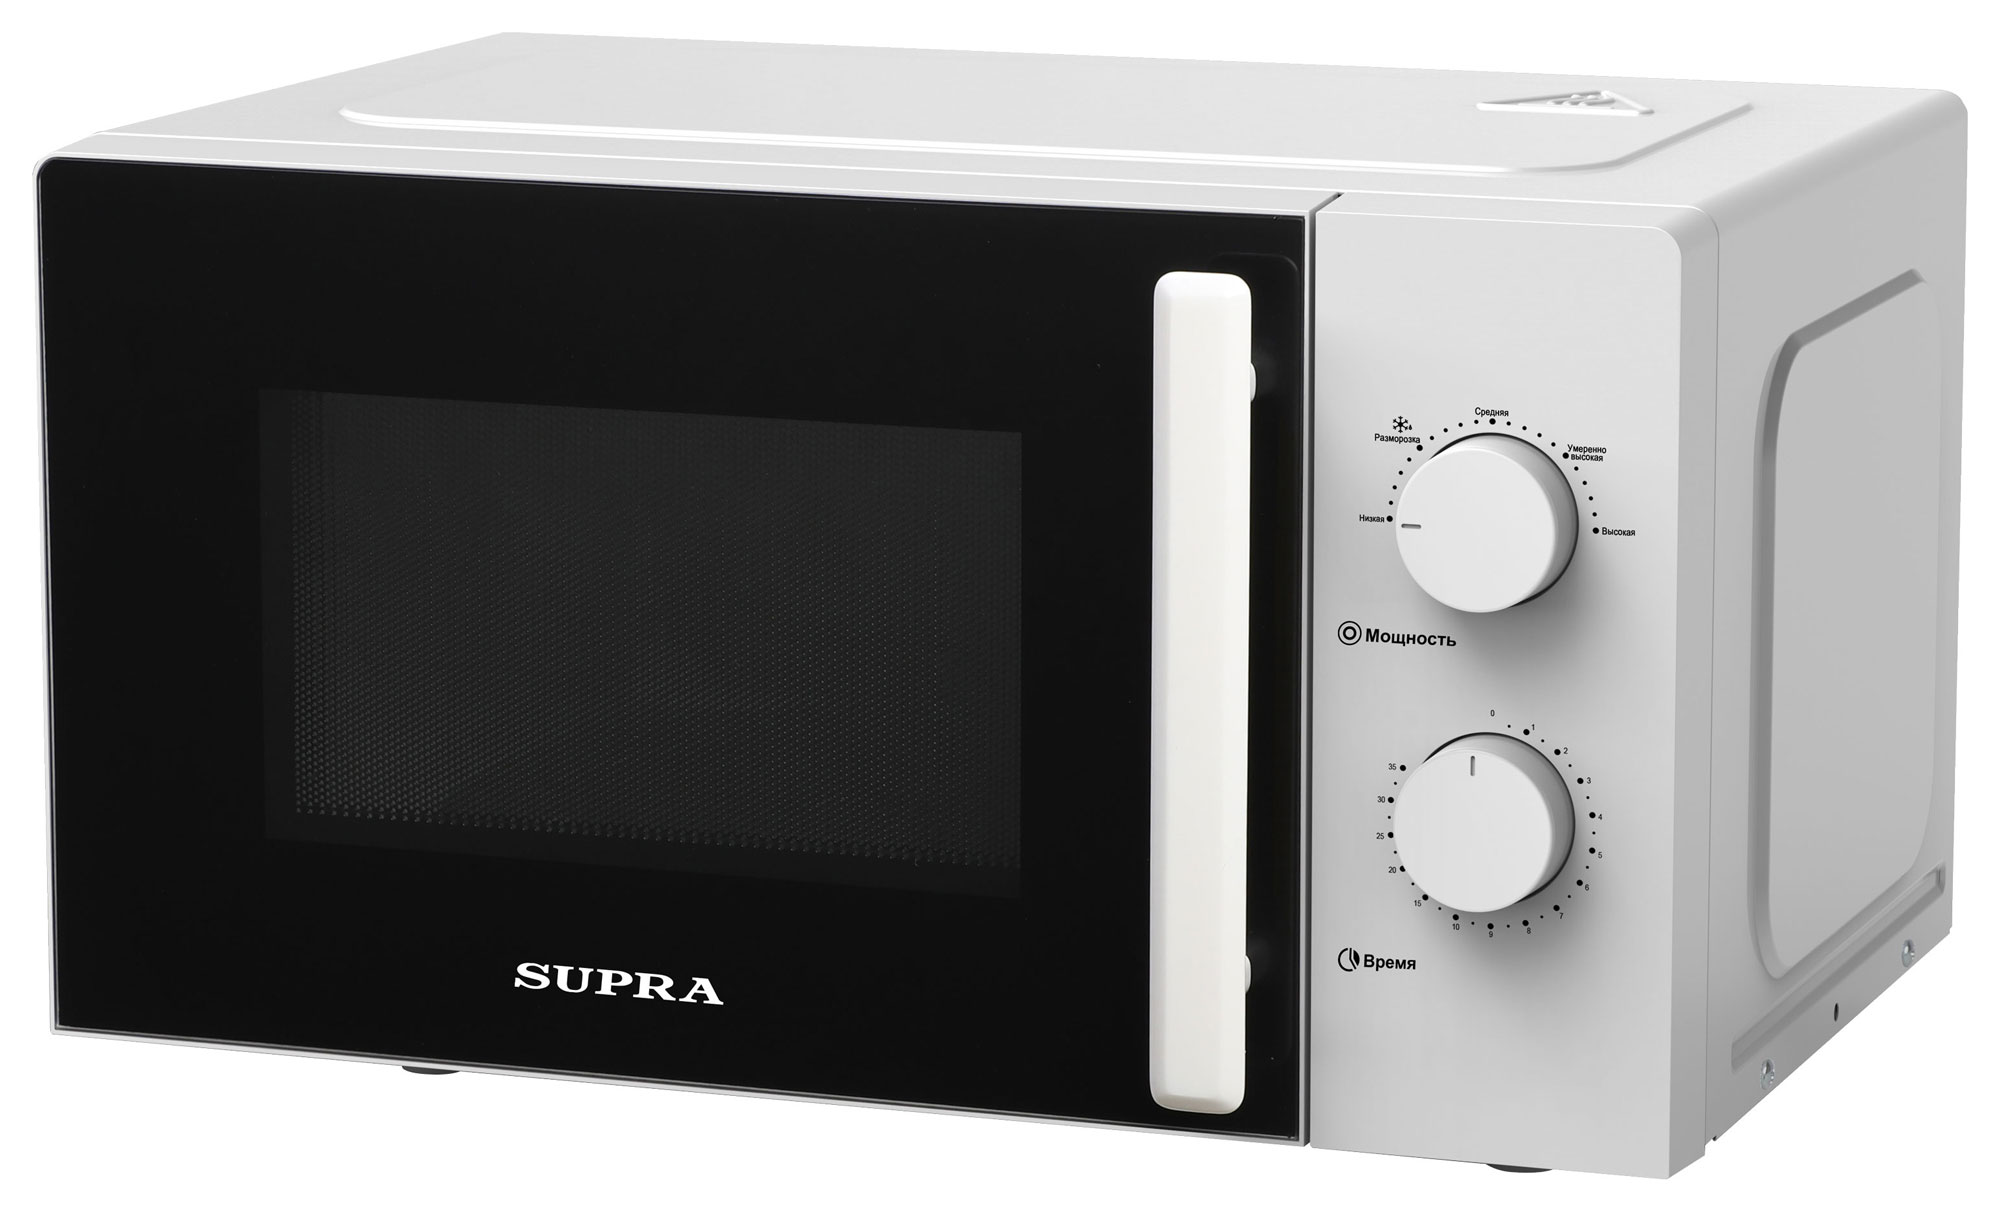 Микроволновая печь Supra 20MW22 White, купить в Москве, цены в интернет-магазинах на Мегамаркет